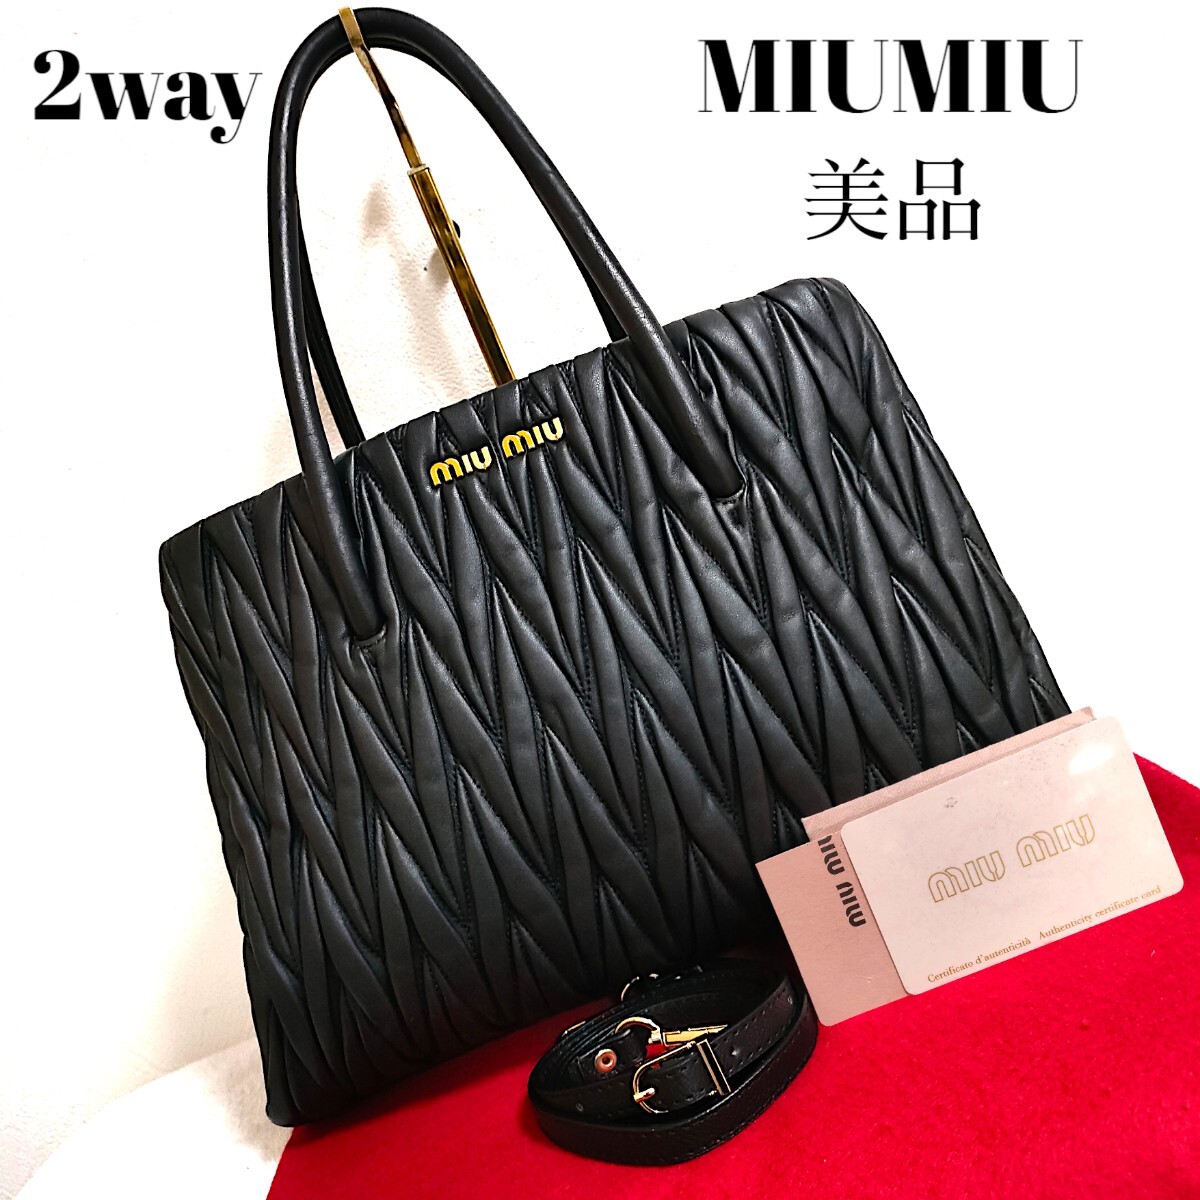  ultimate beautiful goods miumiu 2wayma tera se leather handbag MiuMiu shoulder bag diagonal .. beautiful goods Gold black quilting 